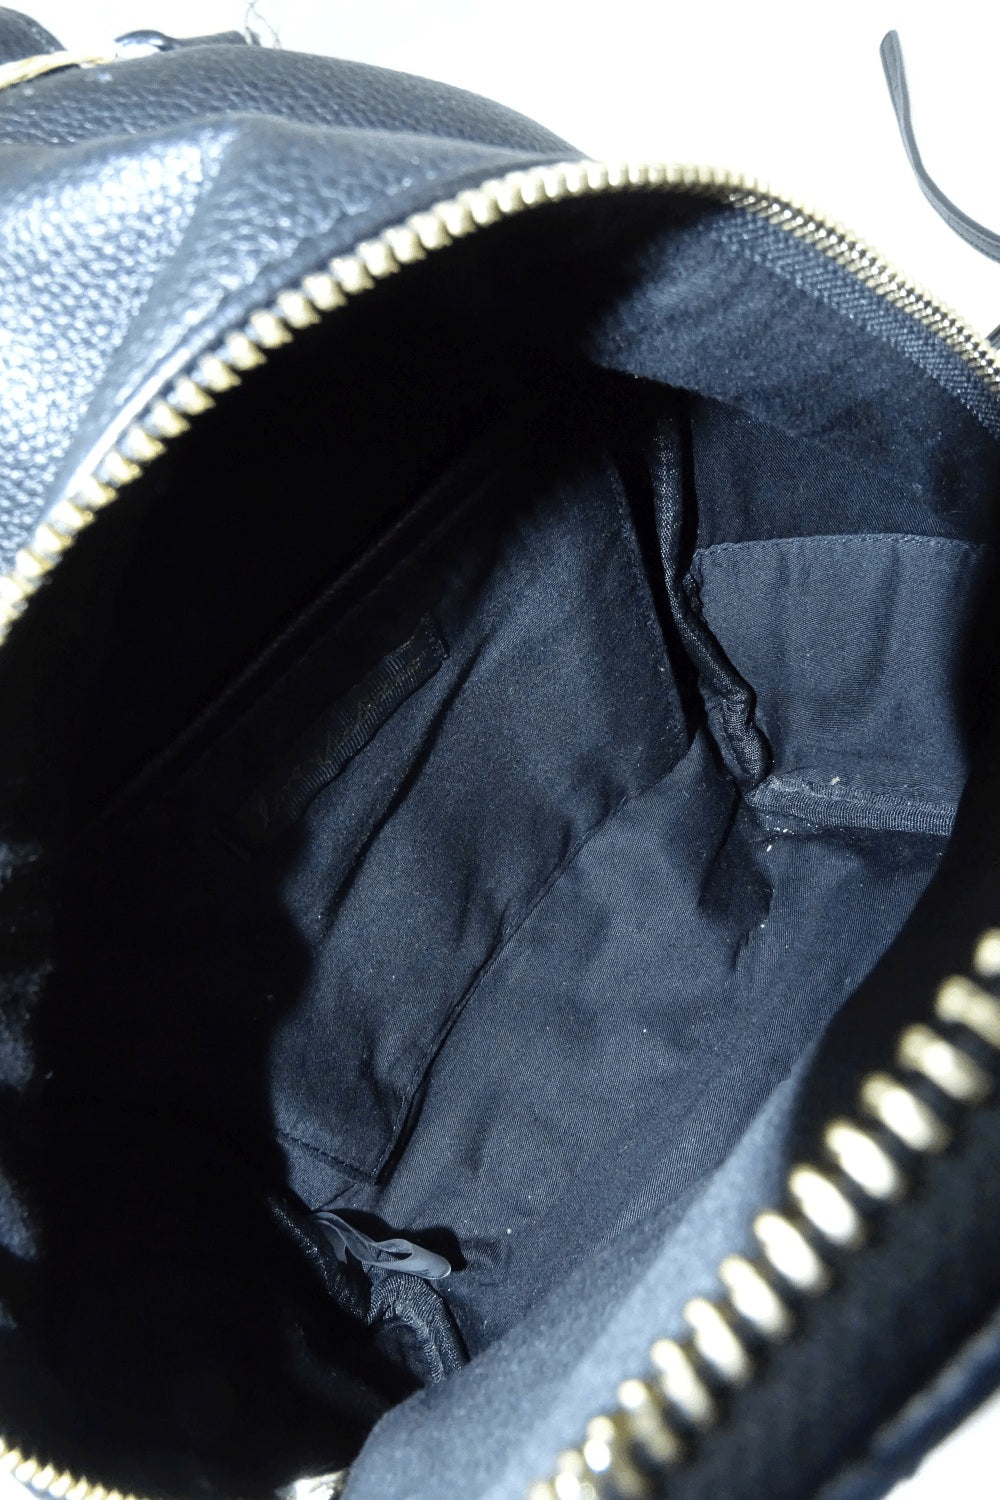 Victoria Secret Black and Gold Detailed Backpack